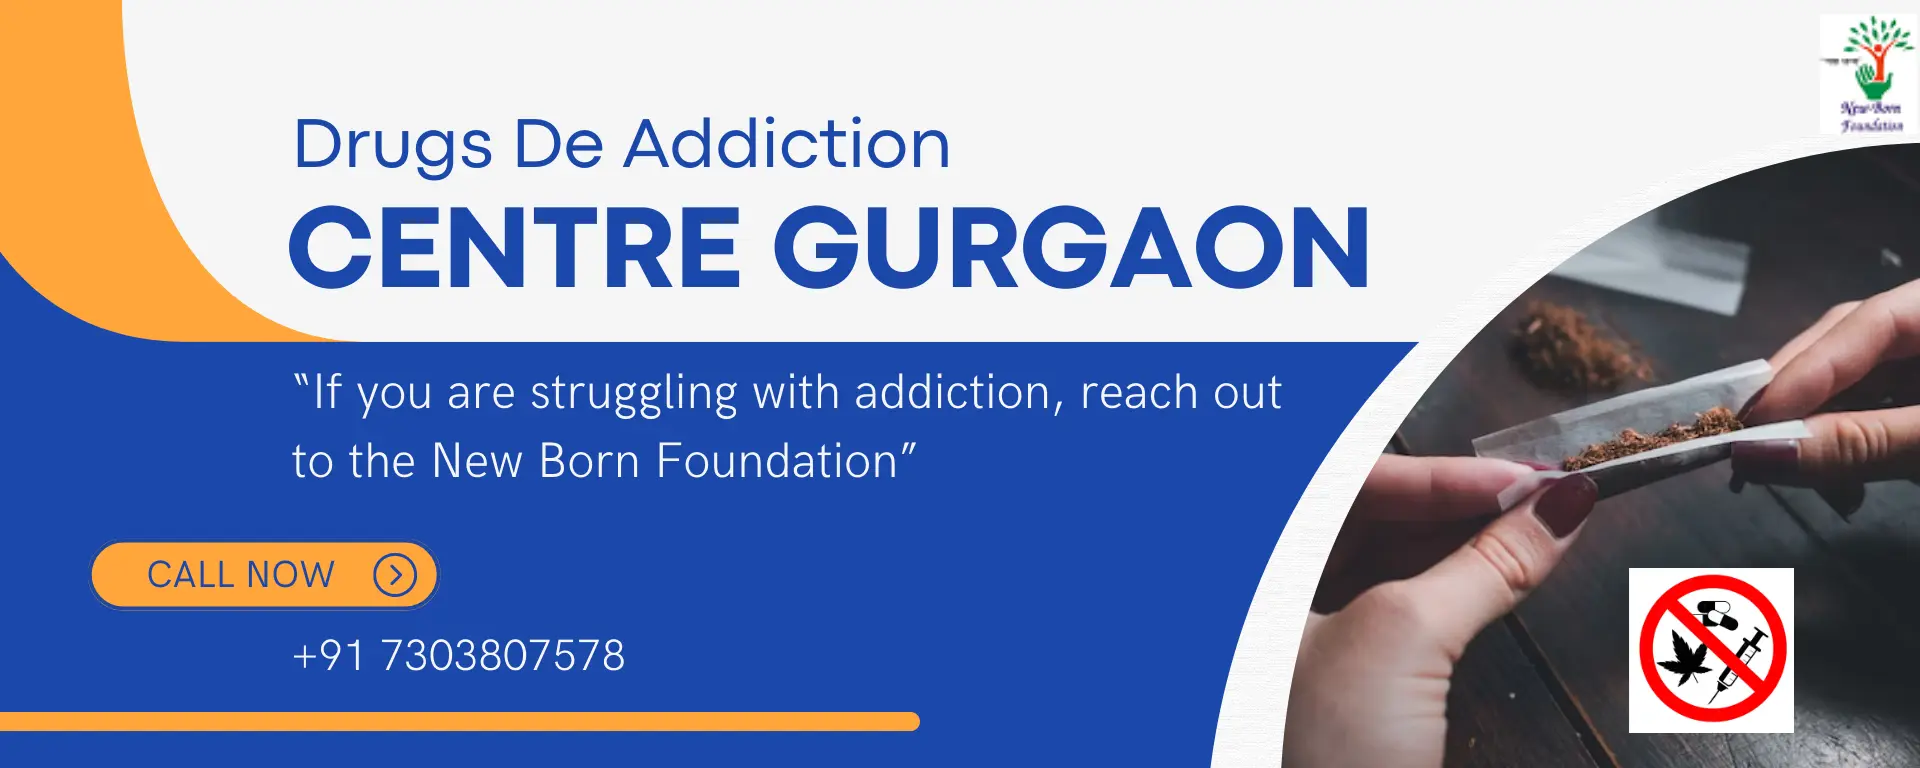 De Addiction centre in Gurgaon